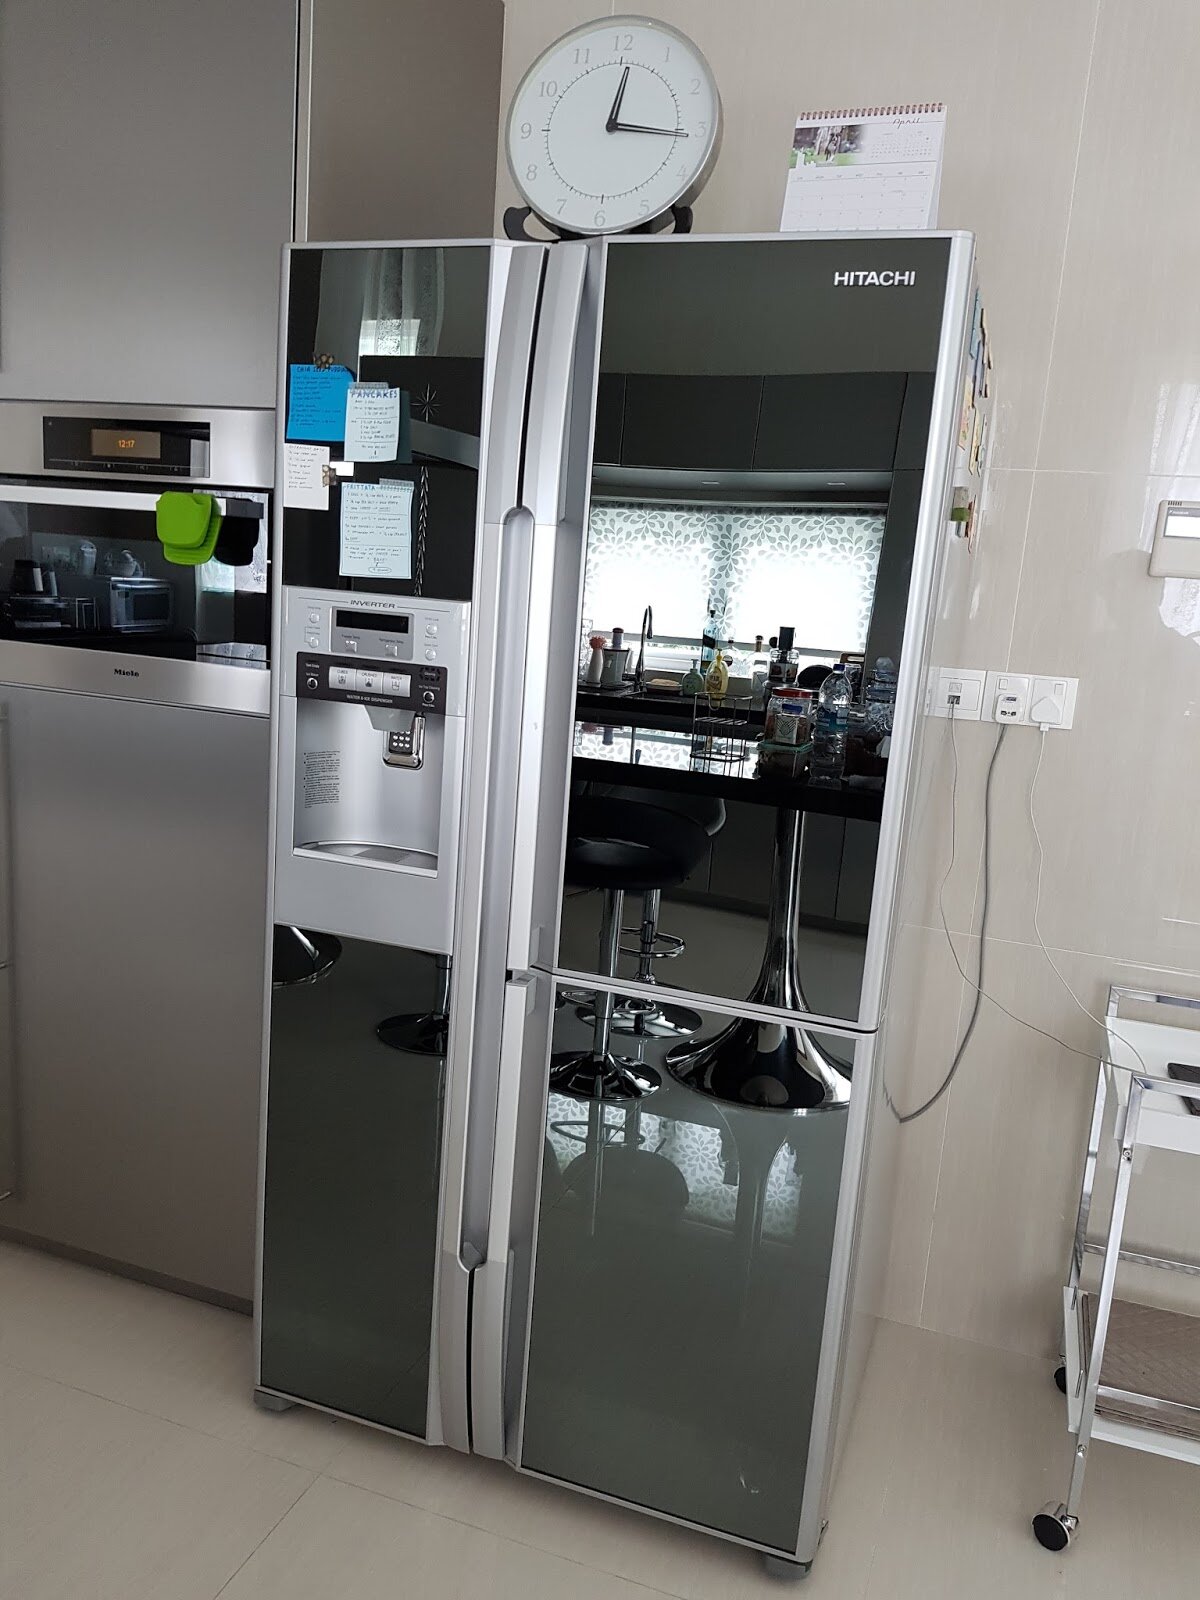 Tủ lạnh Hitachi được đánh giá cao về khả năng làm lạnh và thiết kế sang trọng